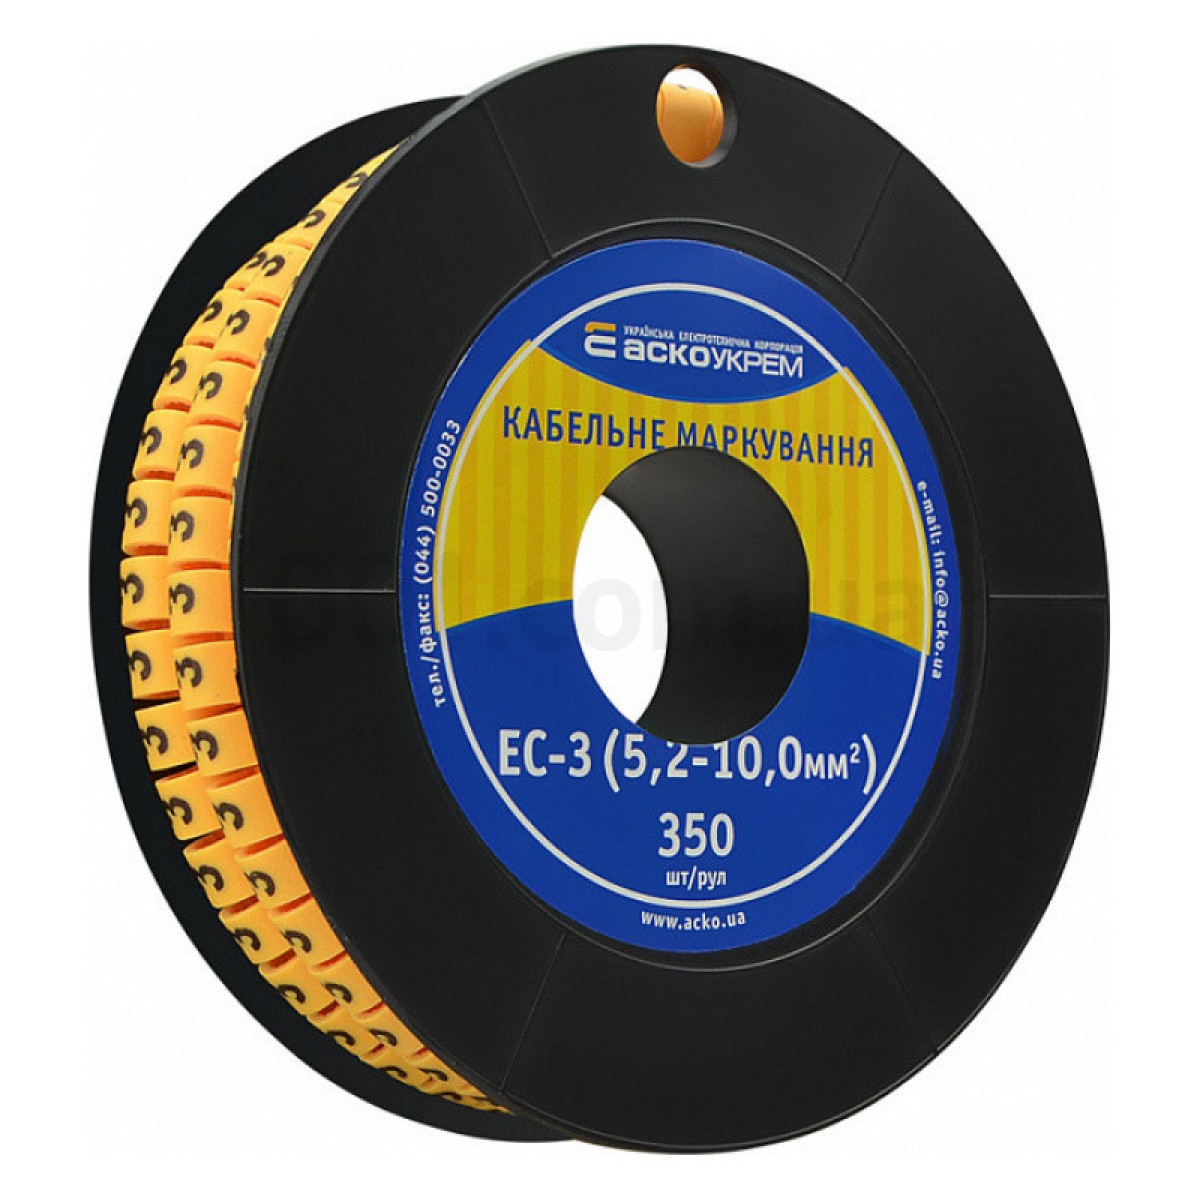 Маркування ЕС-3 для кабелю 5,2-10,0 мм² символ «3» (рулон 250 шт.), АСКО-УКРЕМ 98_98.jpg - фото 1